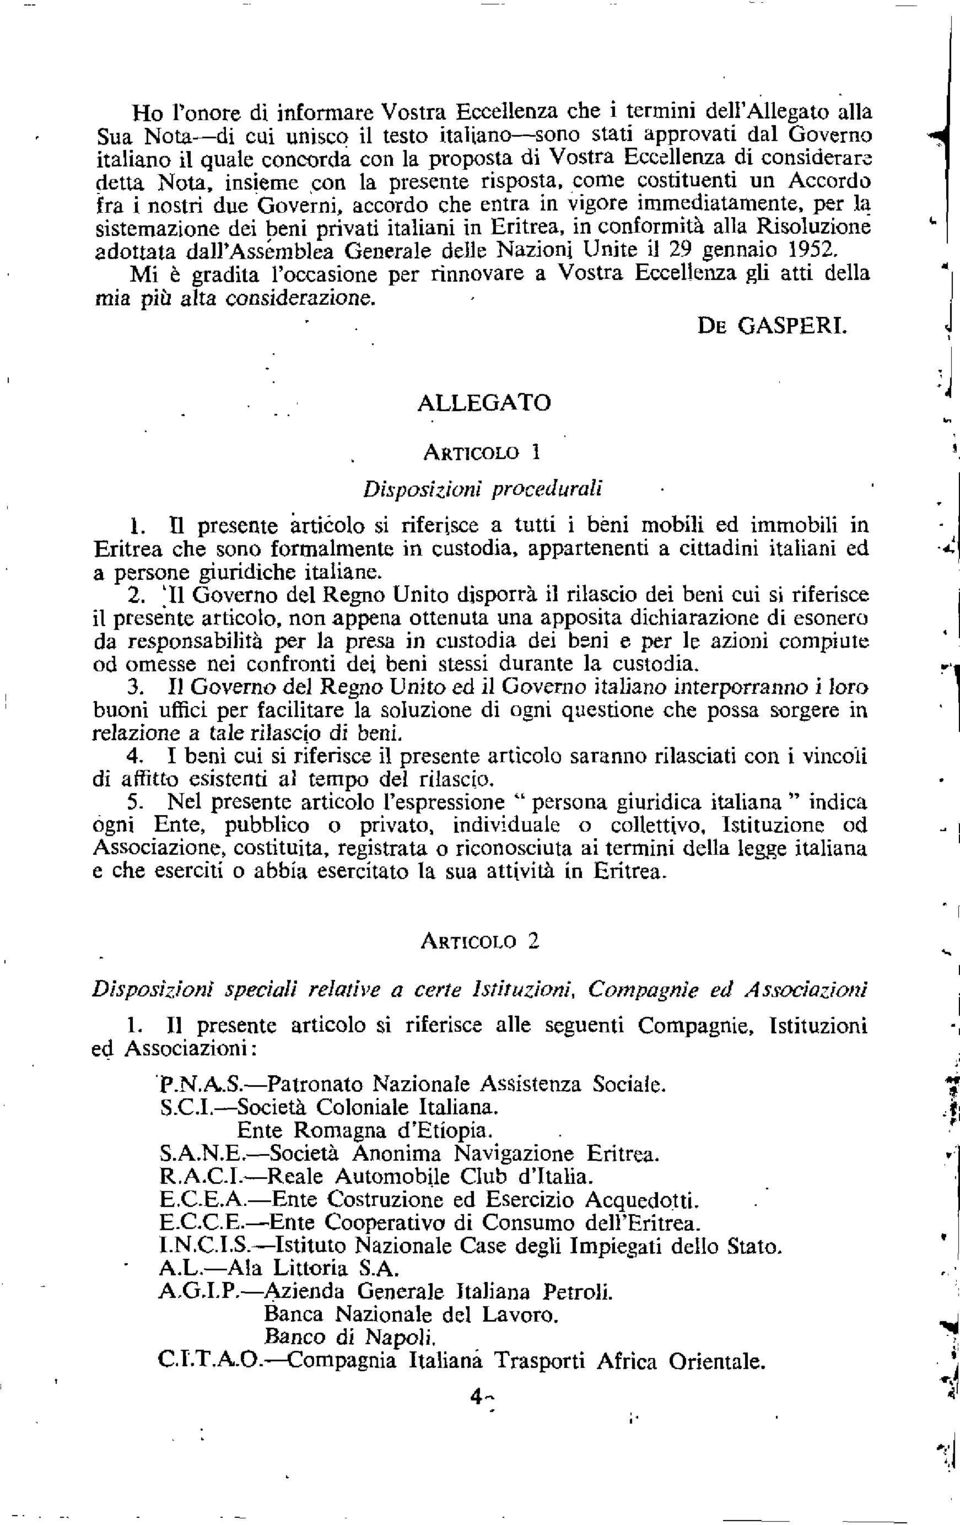 dei beni privati italiani in Eritrea, in conformity alla Risoluzione adottata dall'assemblea Generale dells Nazioni Unite it 29 gennaio 1952.